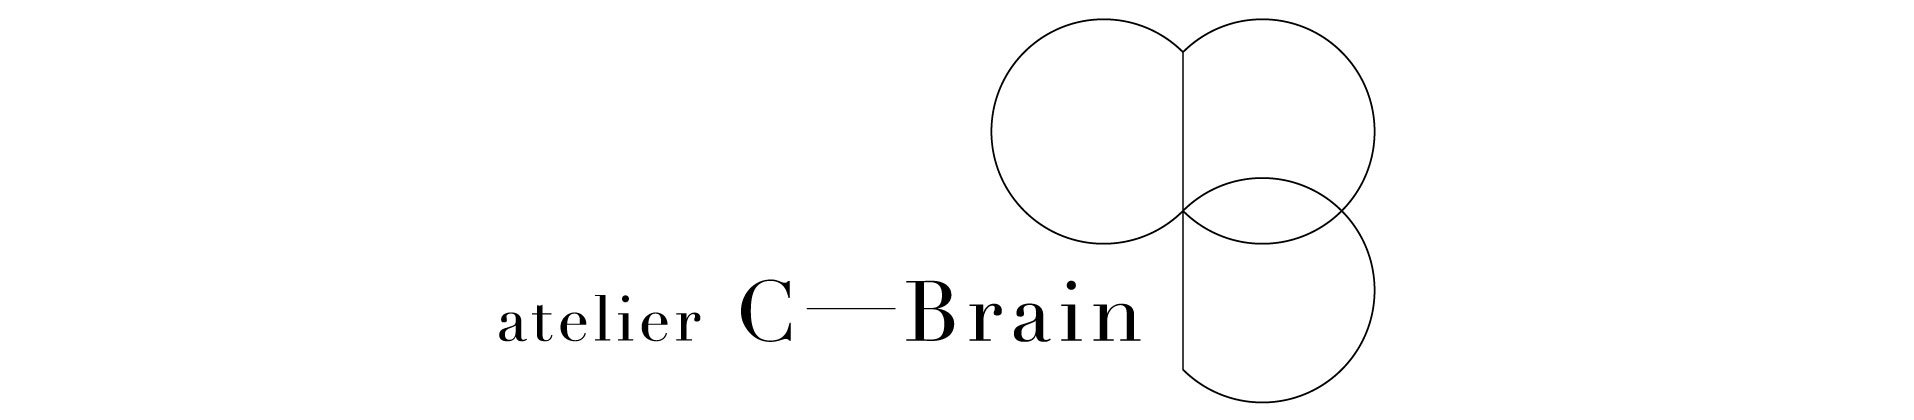 atelier C-Brain